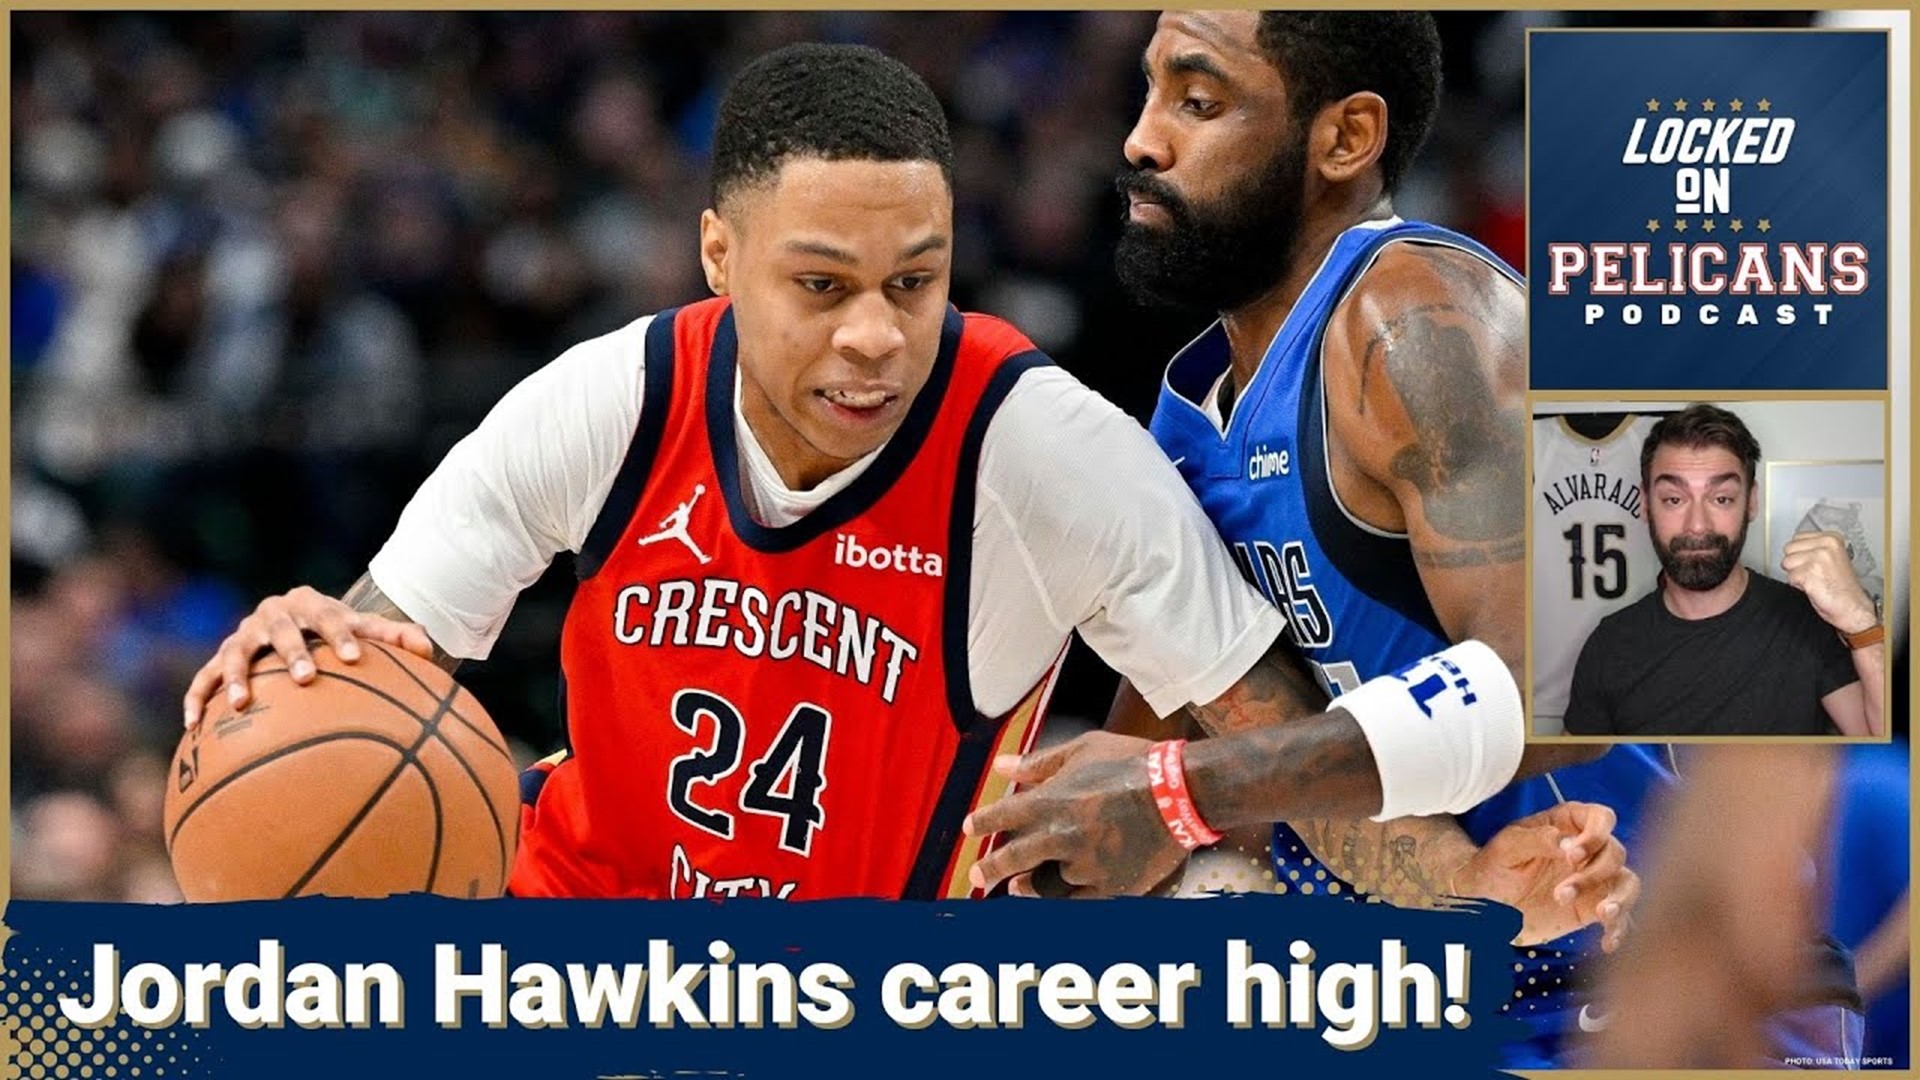 Jordan Hawkins scores 34 points to lead Pelicans past Mavericks 118-108